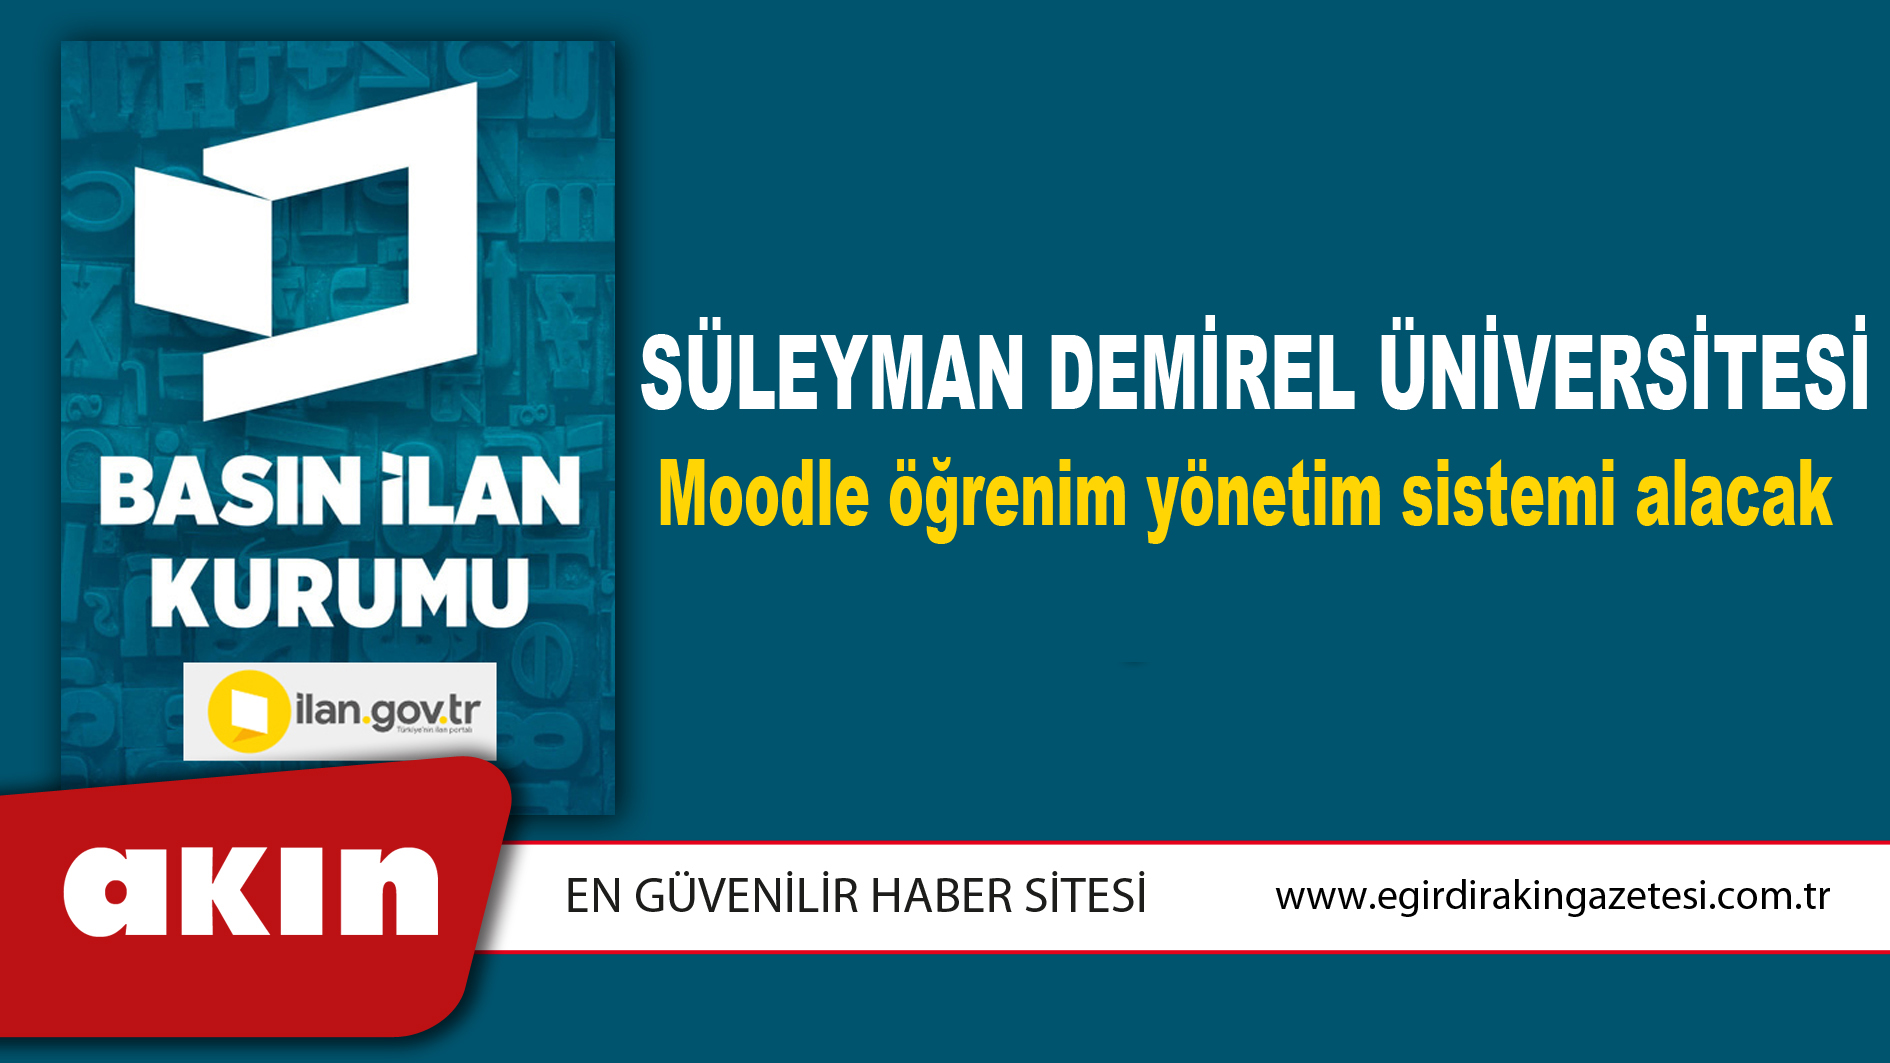 Süleyman Demirel Üniversitesi Moodle öğrenim yönetim sistemi alacak